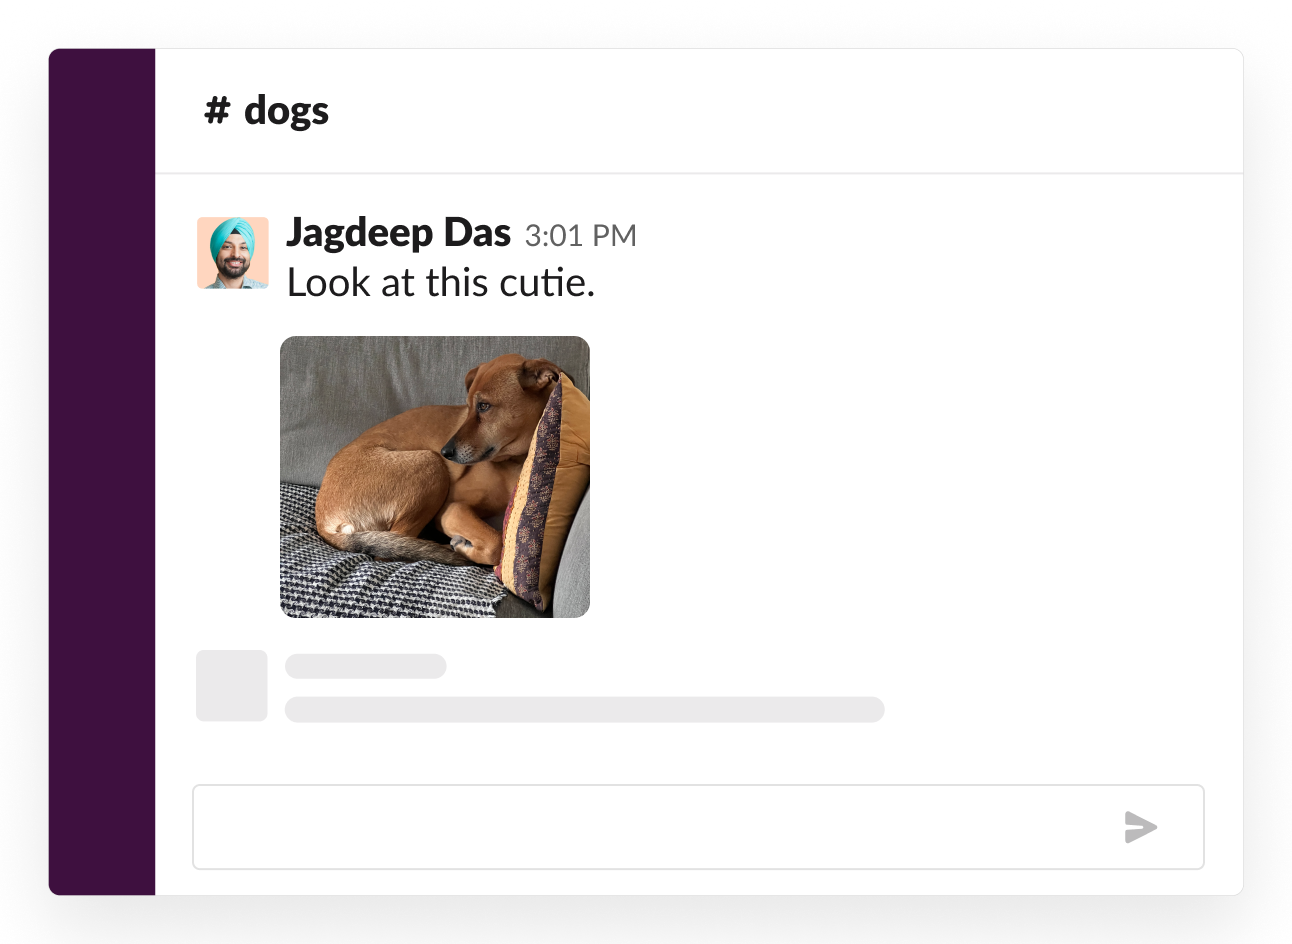 Beispiel eines sozialen Channels über Hunde, in dem jemand ein niedliches Bild seines Welpen geteilt hat